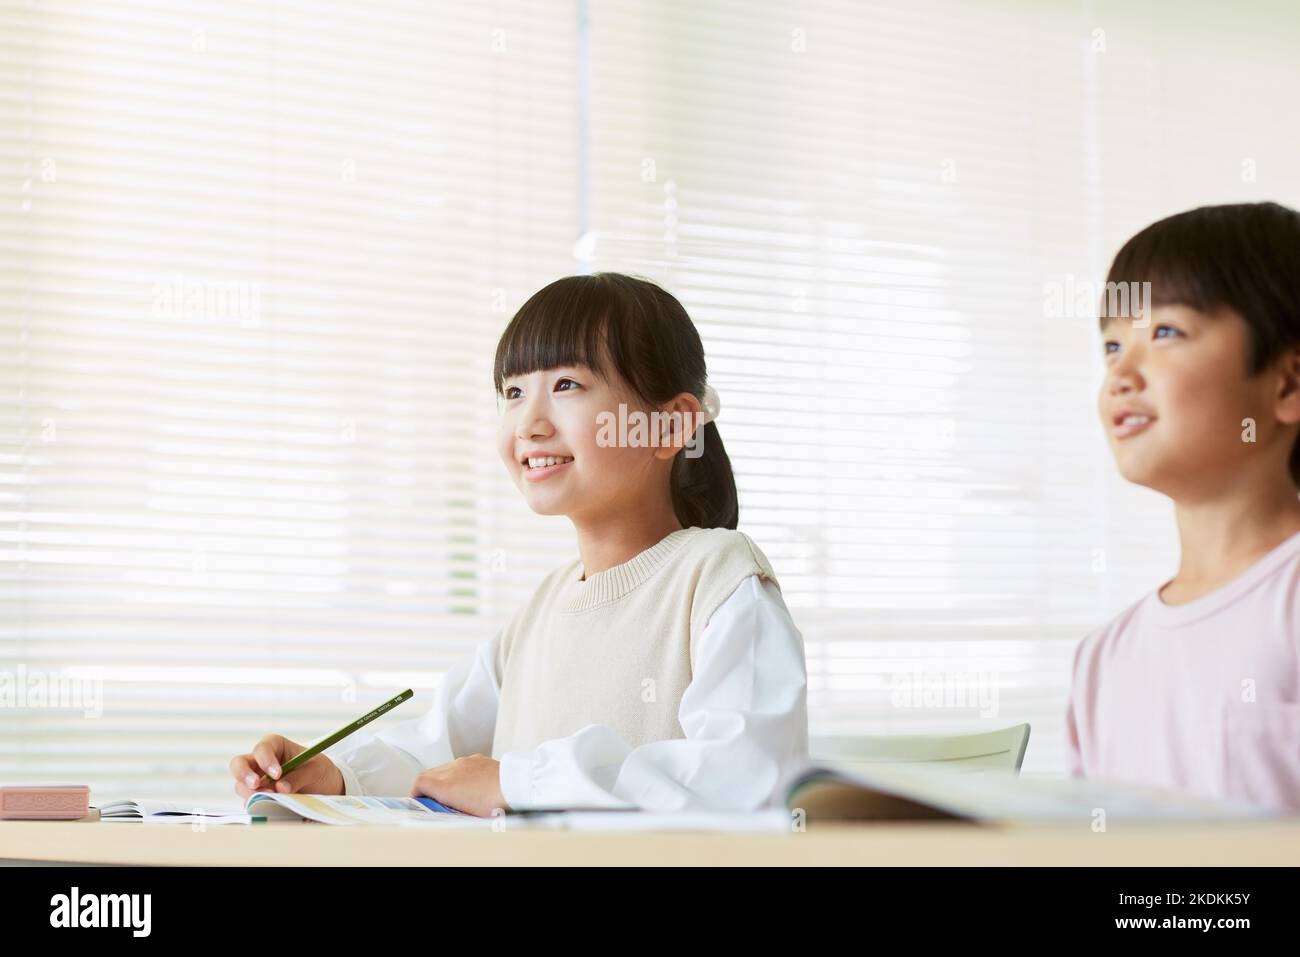 Japanese kids studying Stock Photo